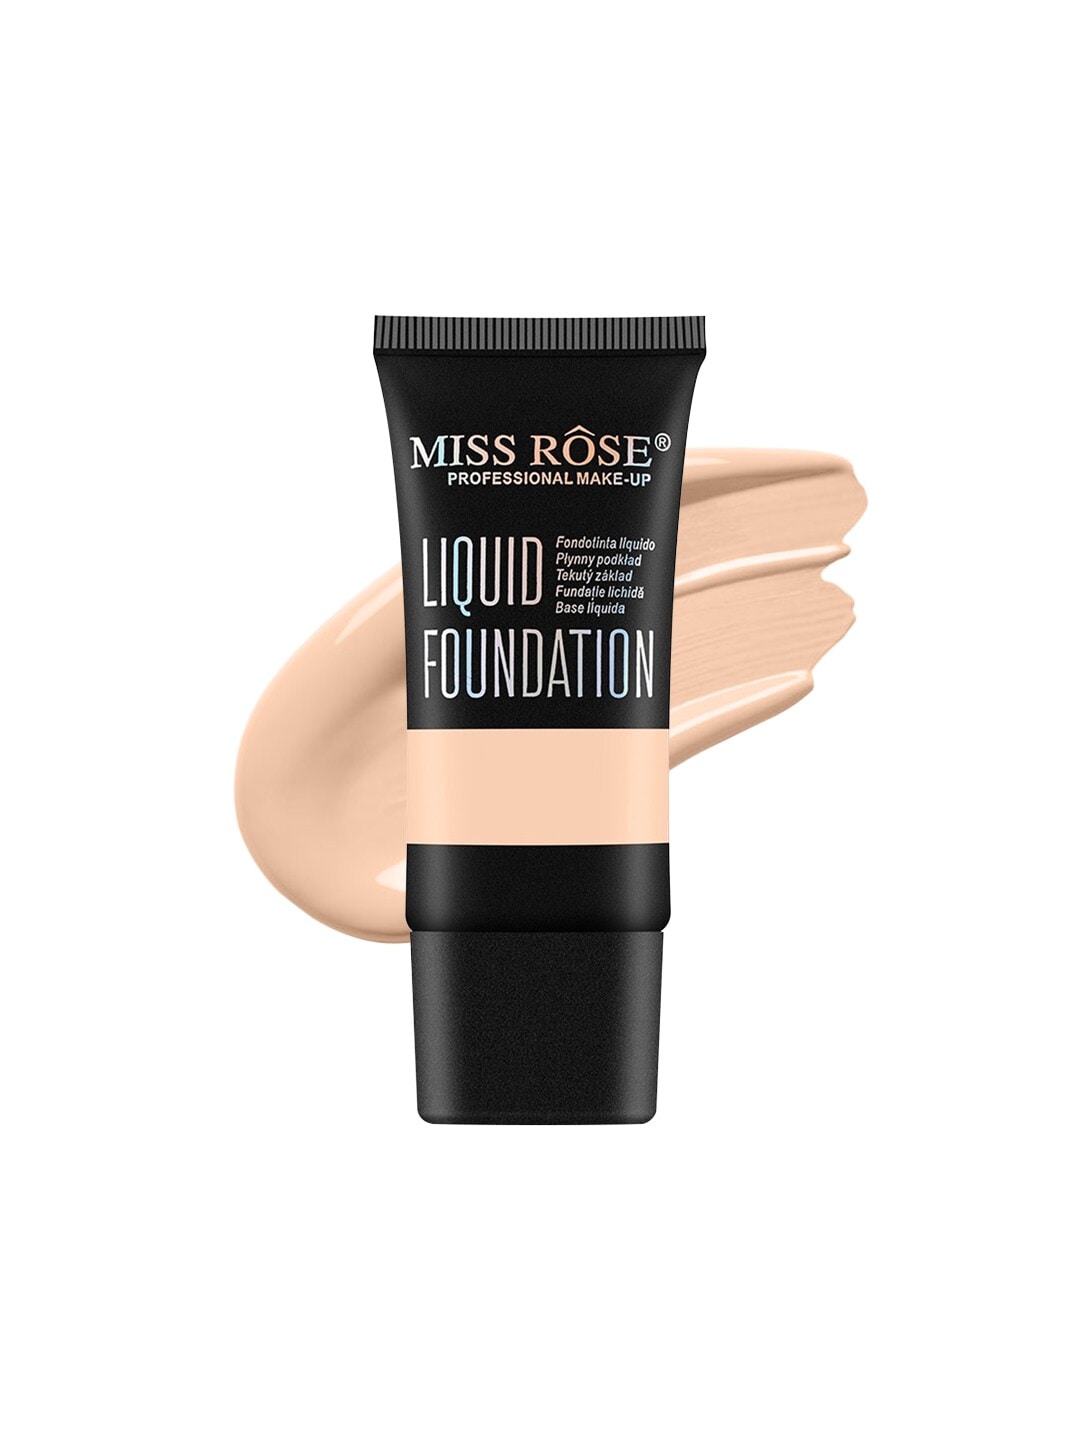 MISS ROSE Matte Finish Liquid Foundation - Beige 05 Price in India